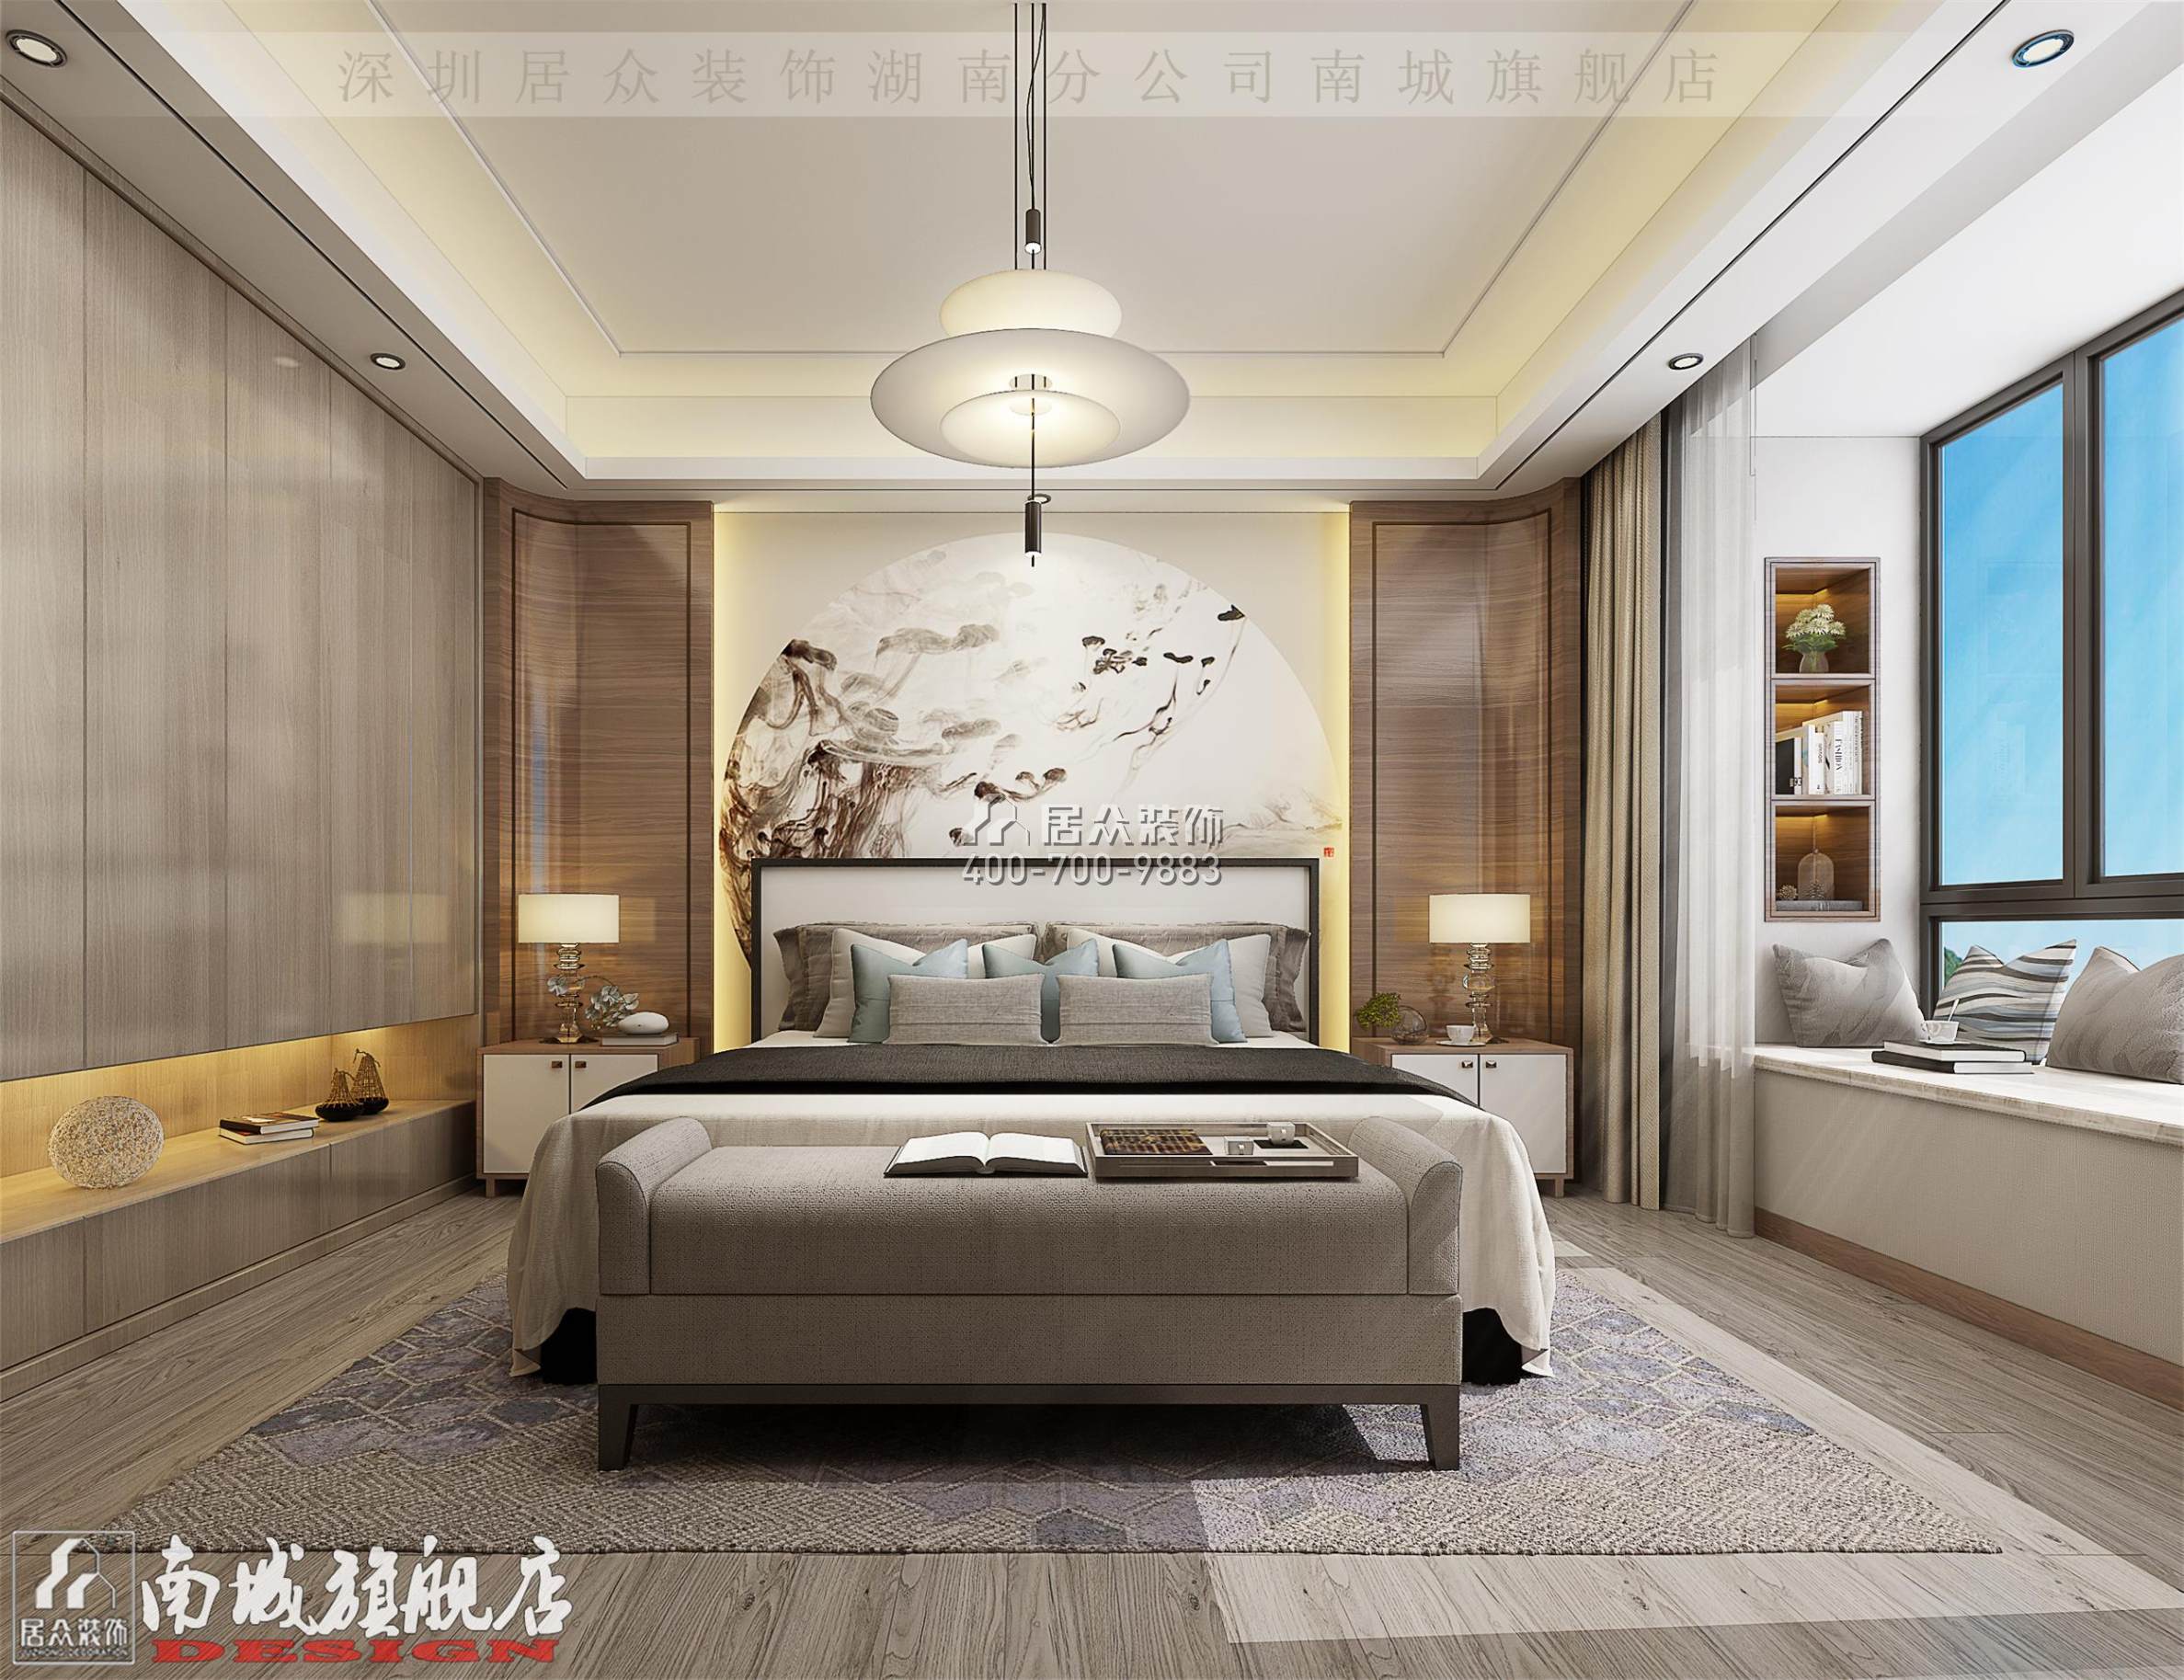 中建江山壹号232平方米中式风格平层户型卧室装修效果图